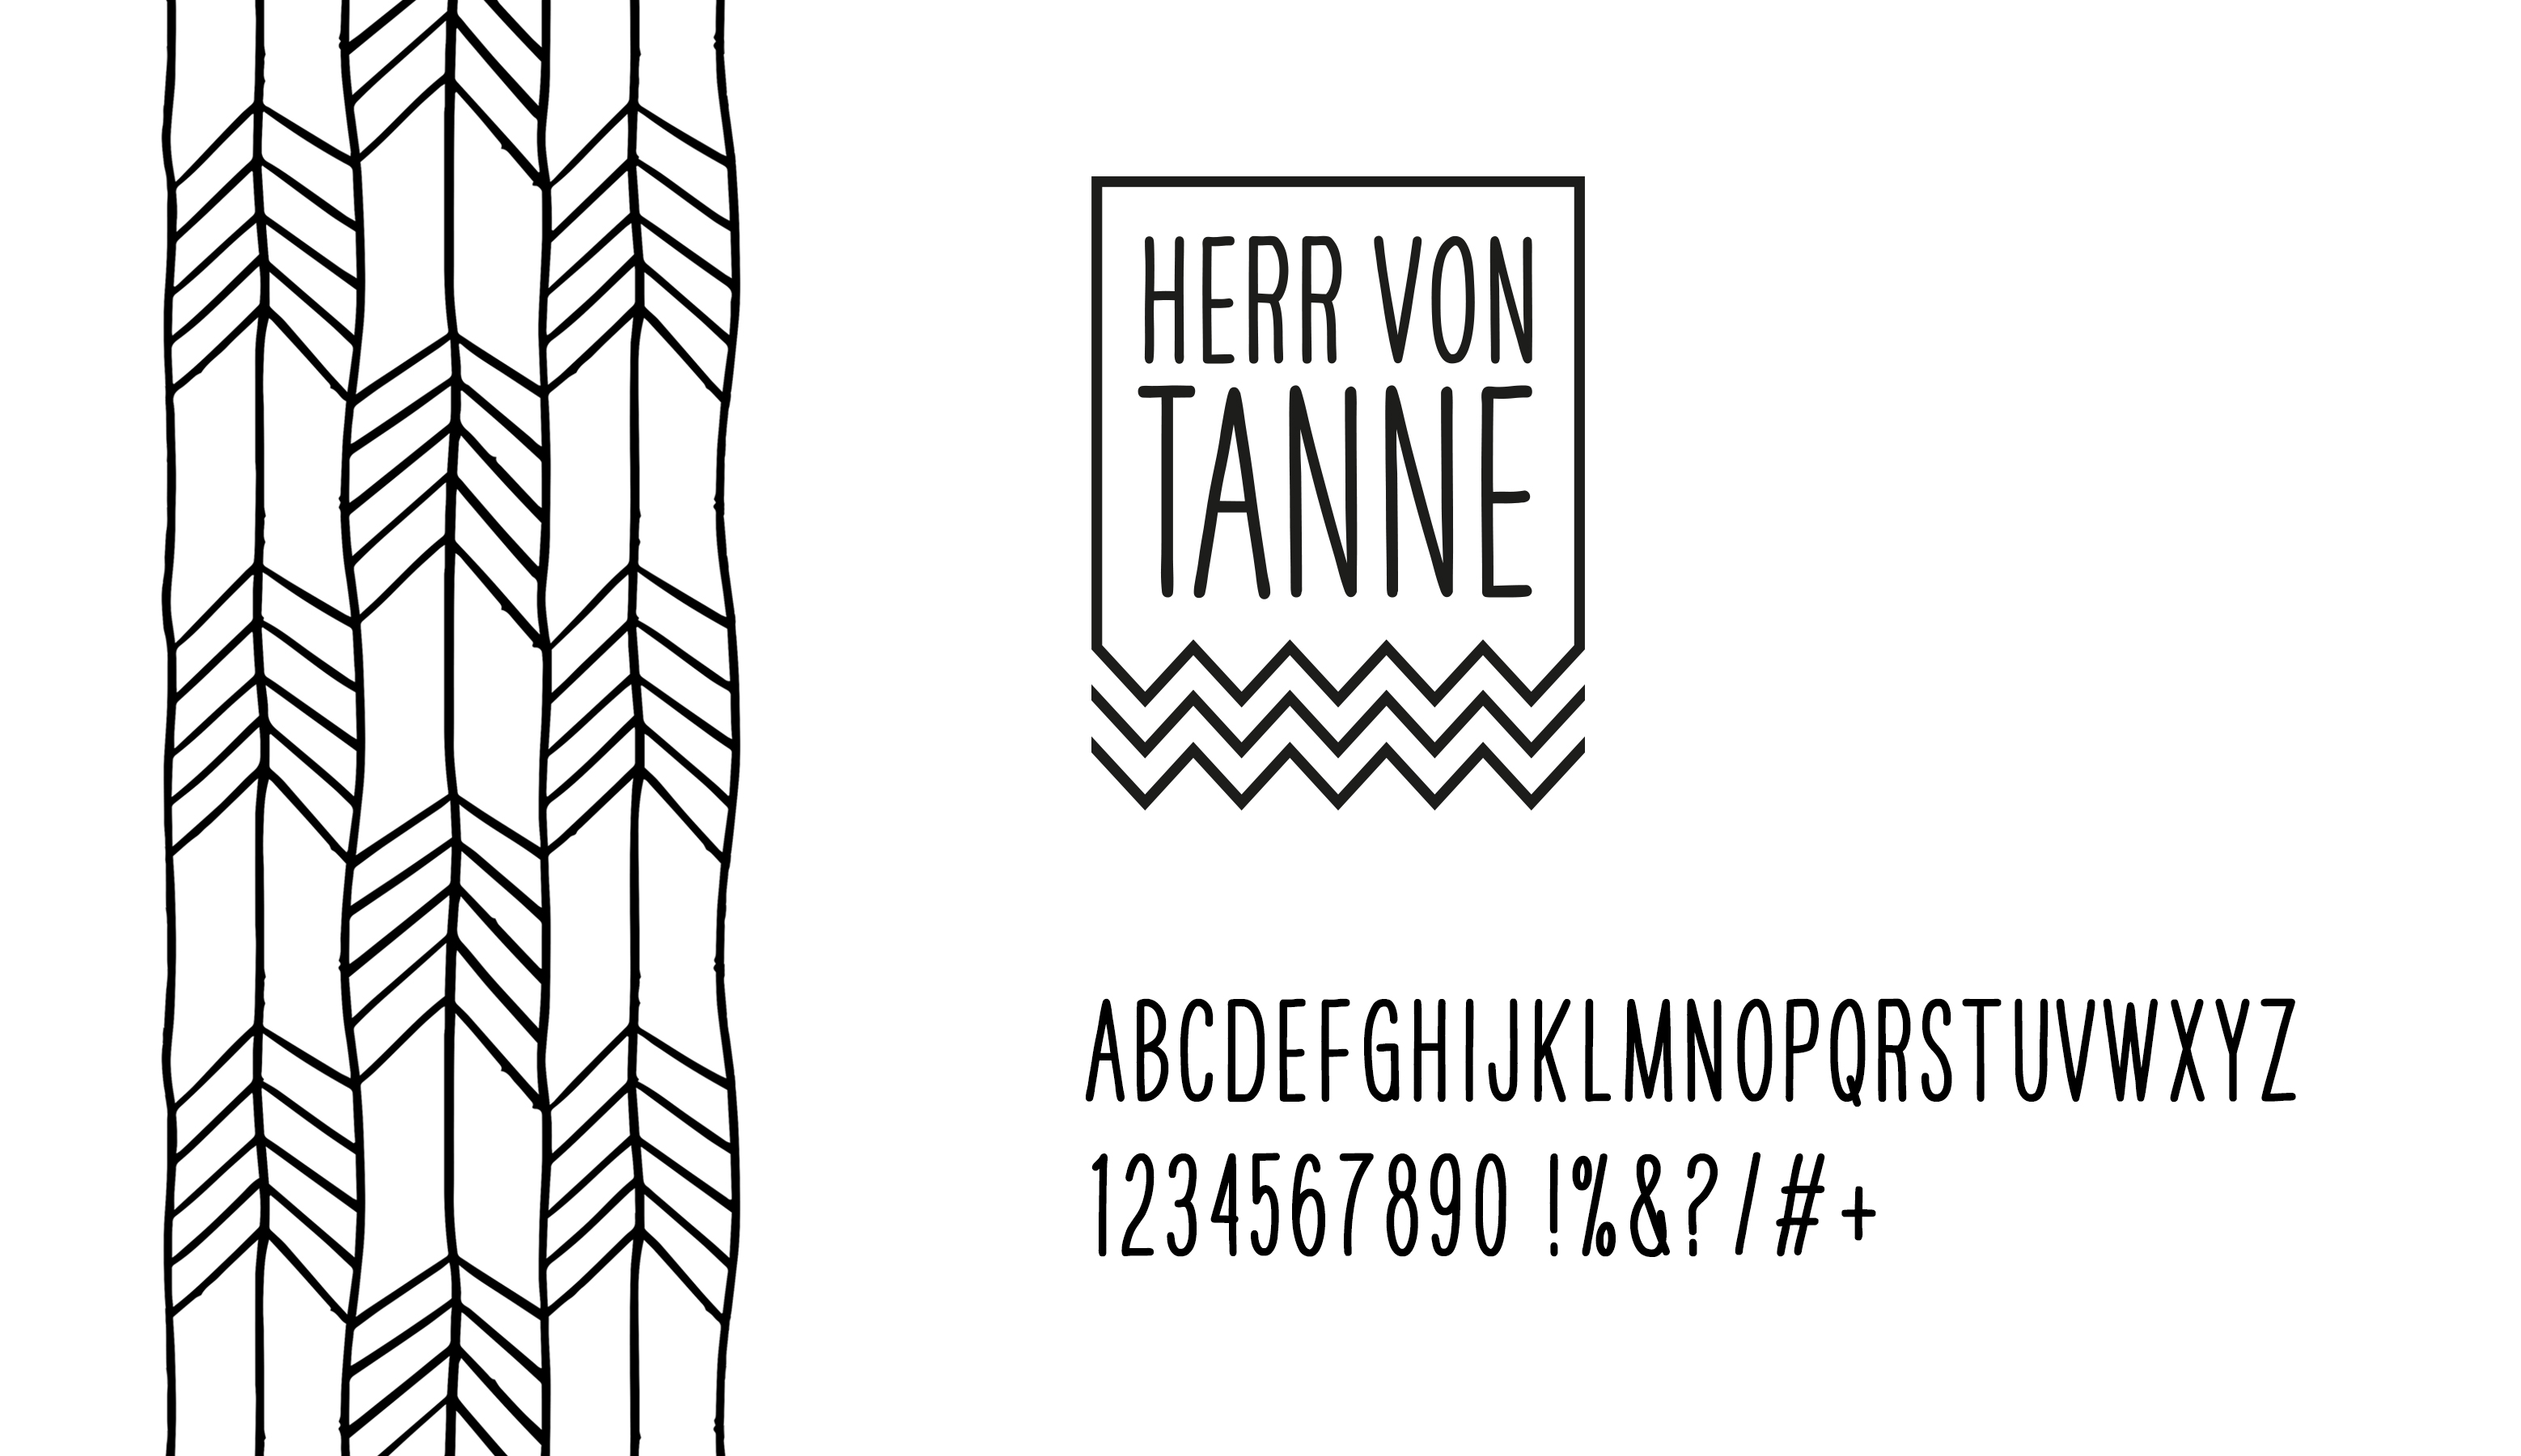 Herr von Tanne, Salatbar, Markenentwicklung, Corporate Design, Interior Design